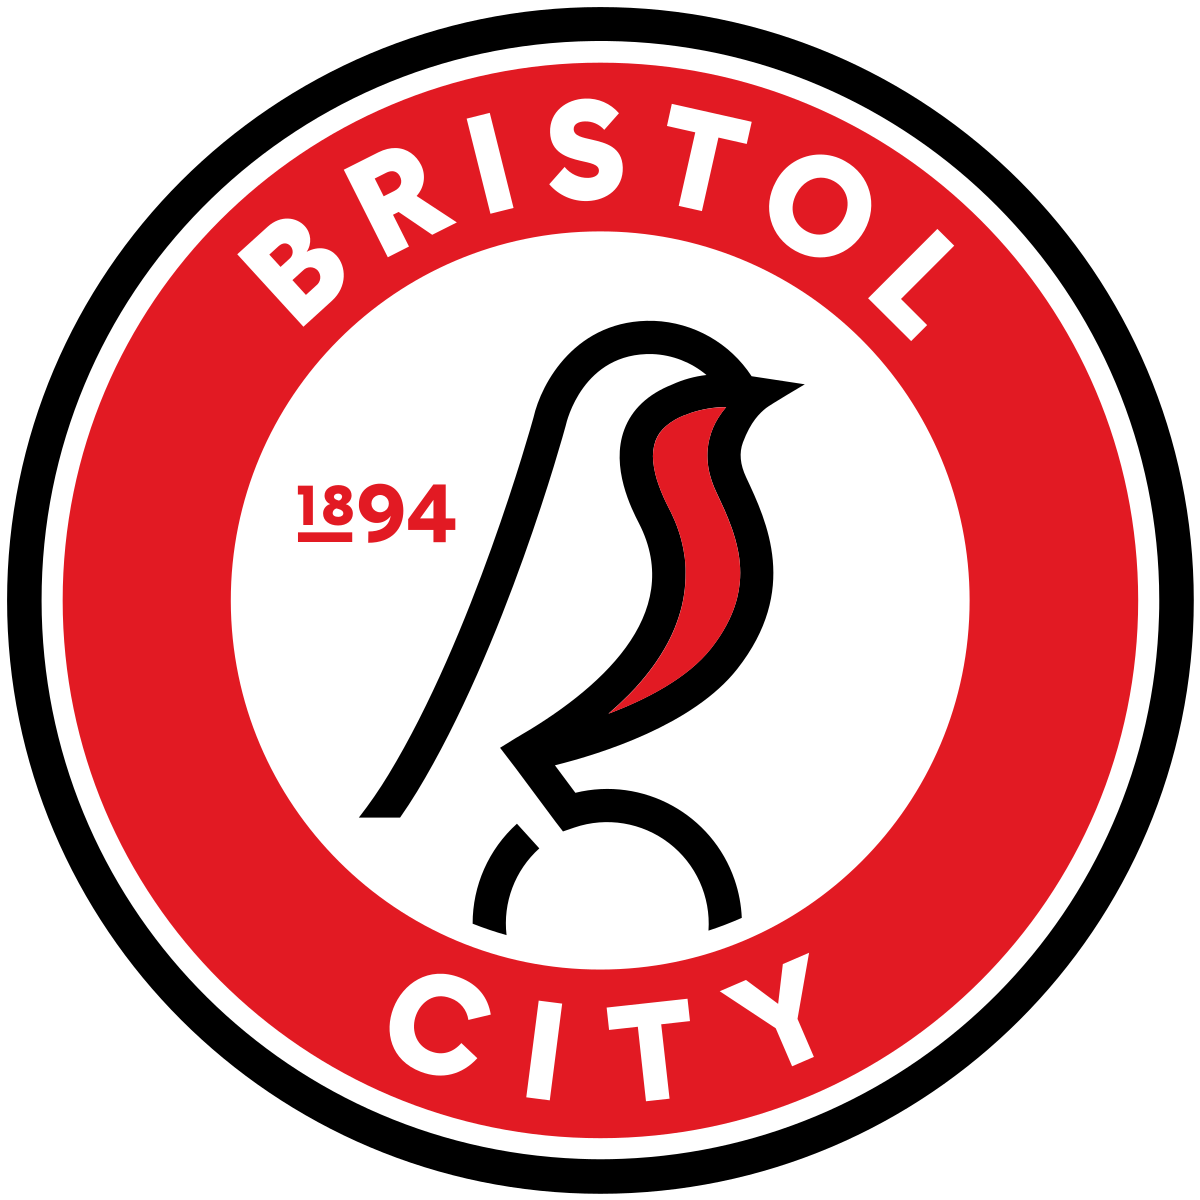 Bristol City v Middlesbrough - Hospitality